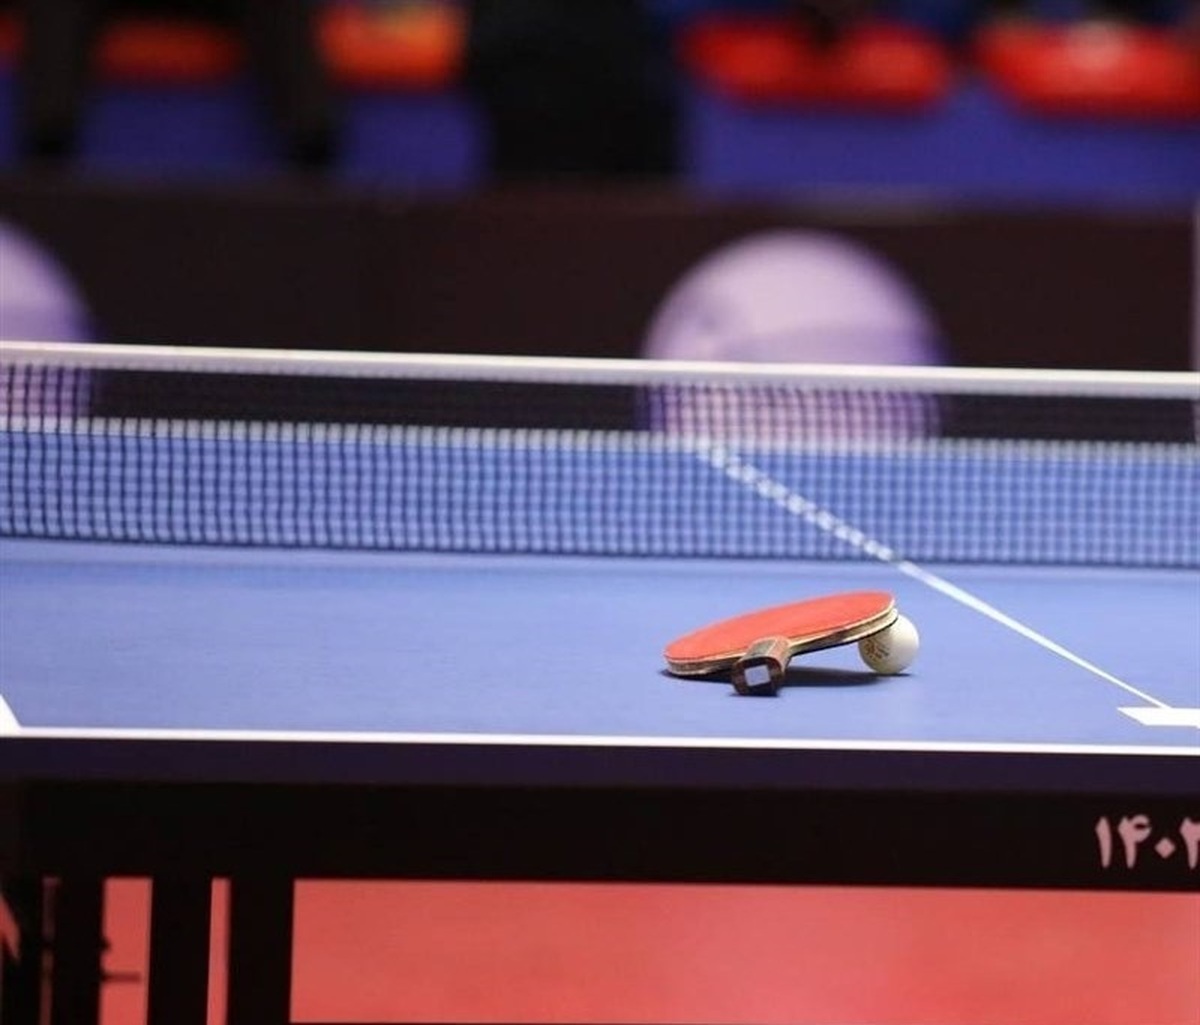 پایان مسابقات تنیس روی میز «جام سلامت» بانوان با معرفی نفرات برتر + عکس